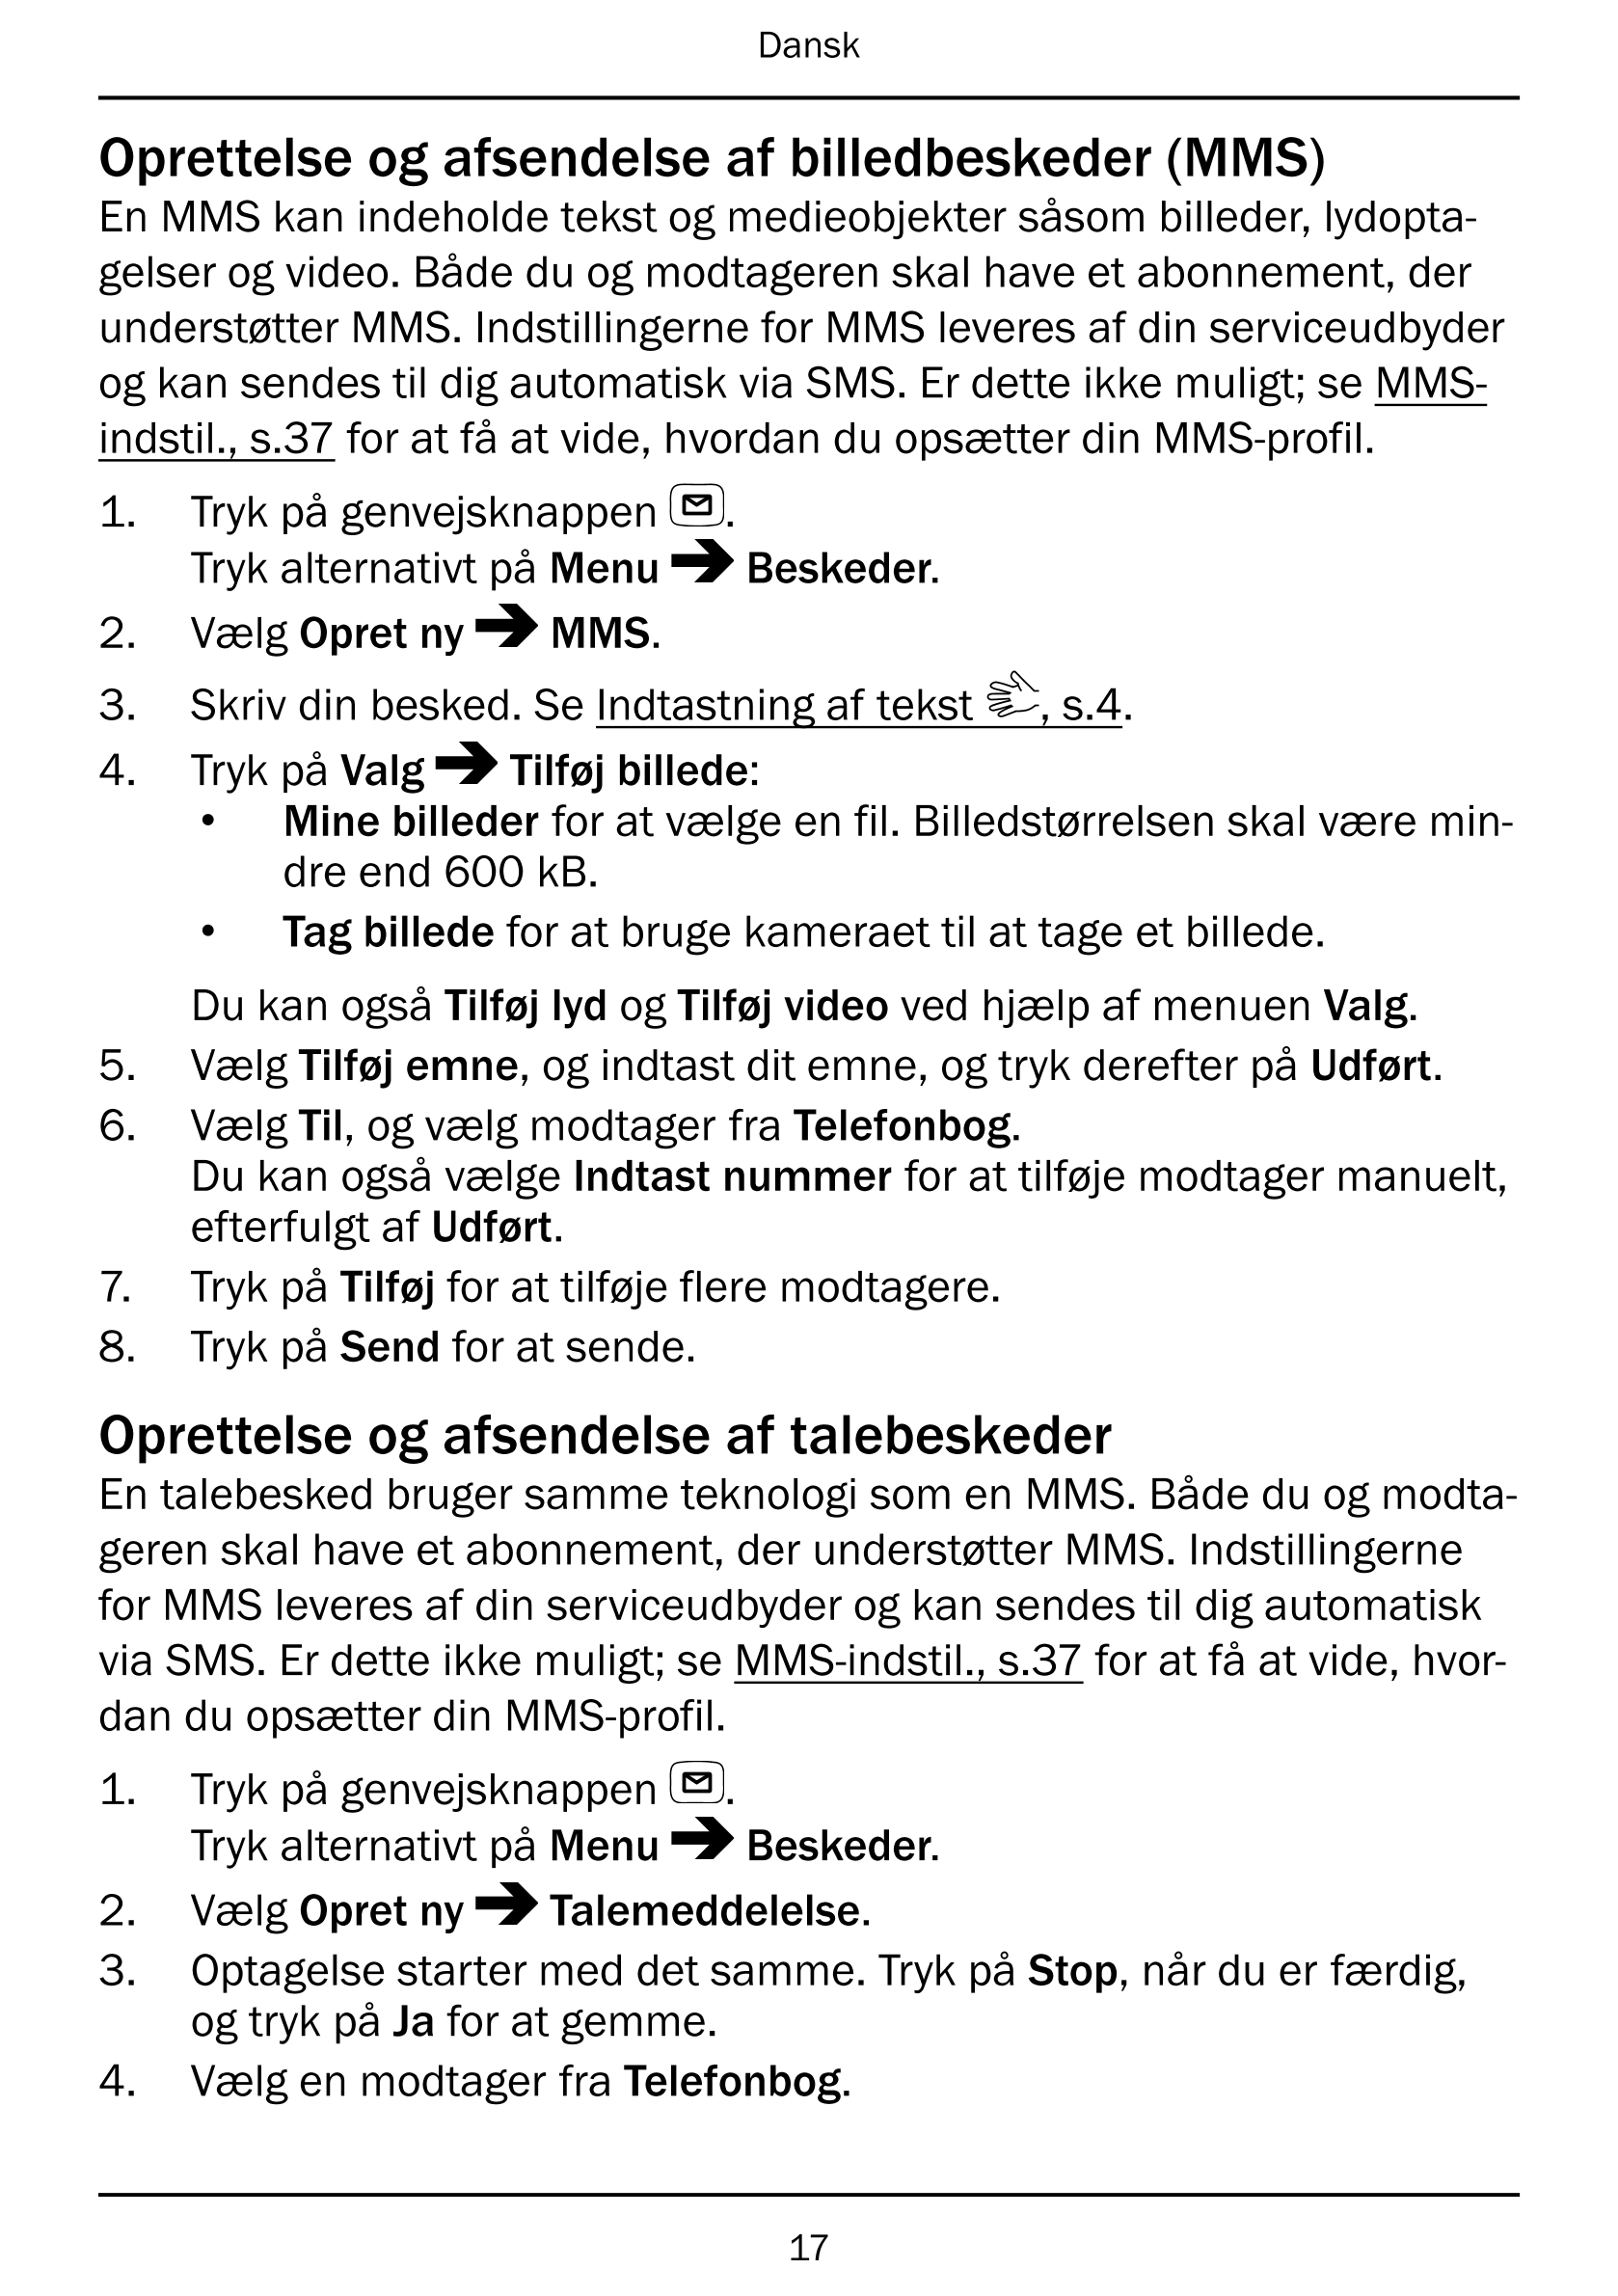 Dansk
Oprettelse og afsendelse af billedbeskeder (MMS)
En MMS kan indeholde tekst og medieobjekter såsom billeder, lydopta-
gels